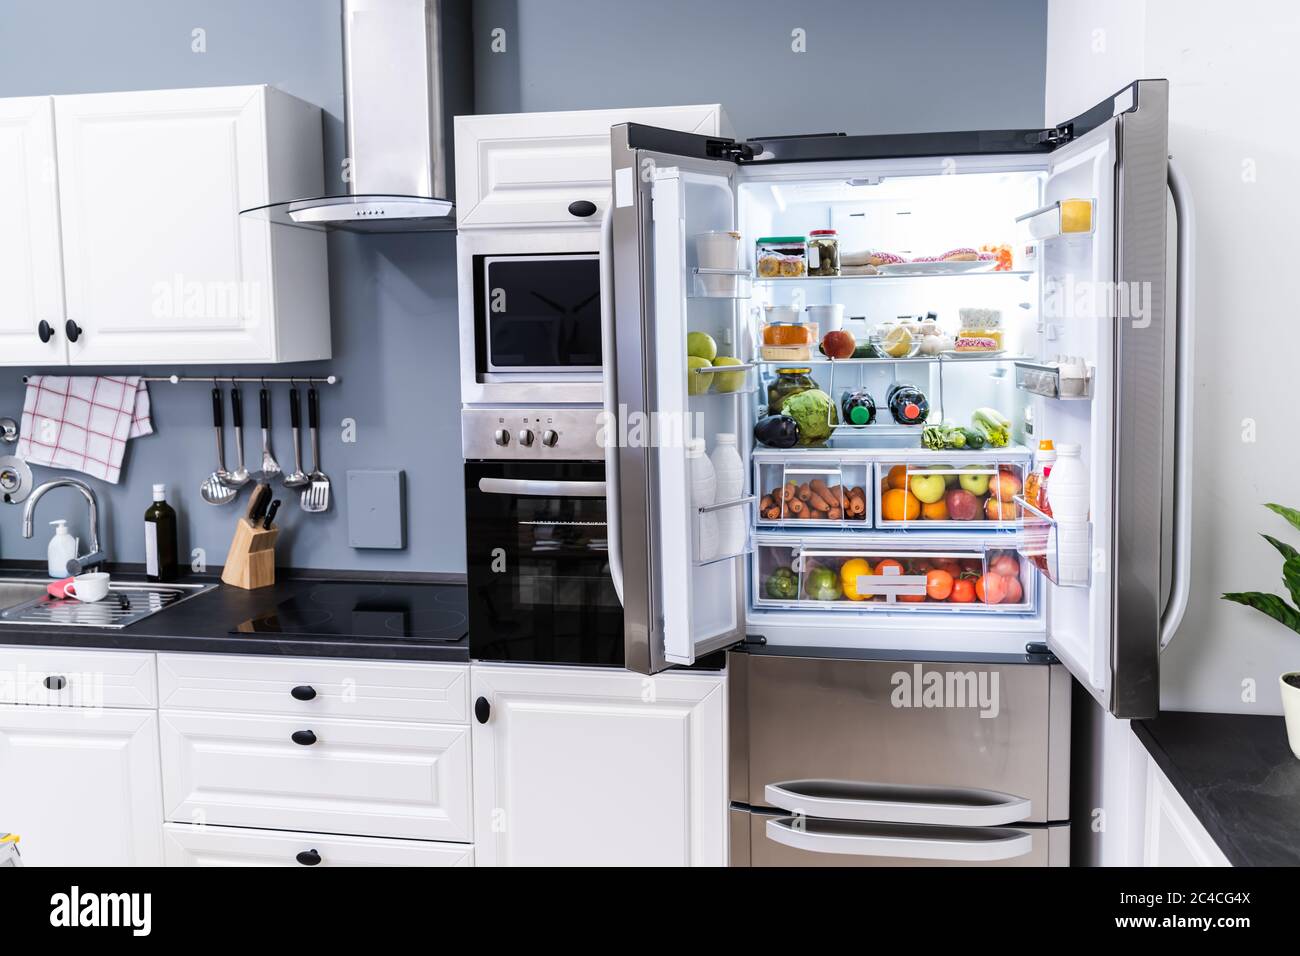 Open Refrigerator Or Fridge Door With Food Inside Stock Photo